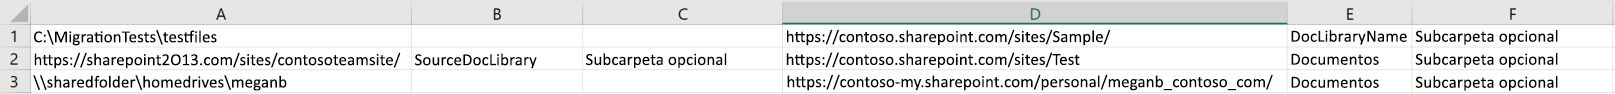 Formato de ejemplo de la Herramienta de migración de SharePoint cuando se usa un archivo CSV